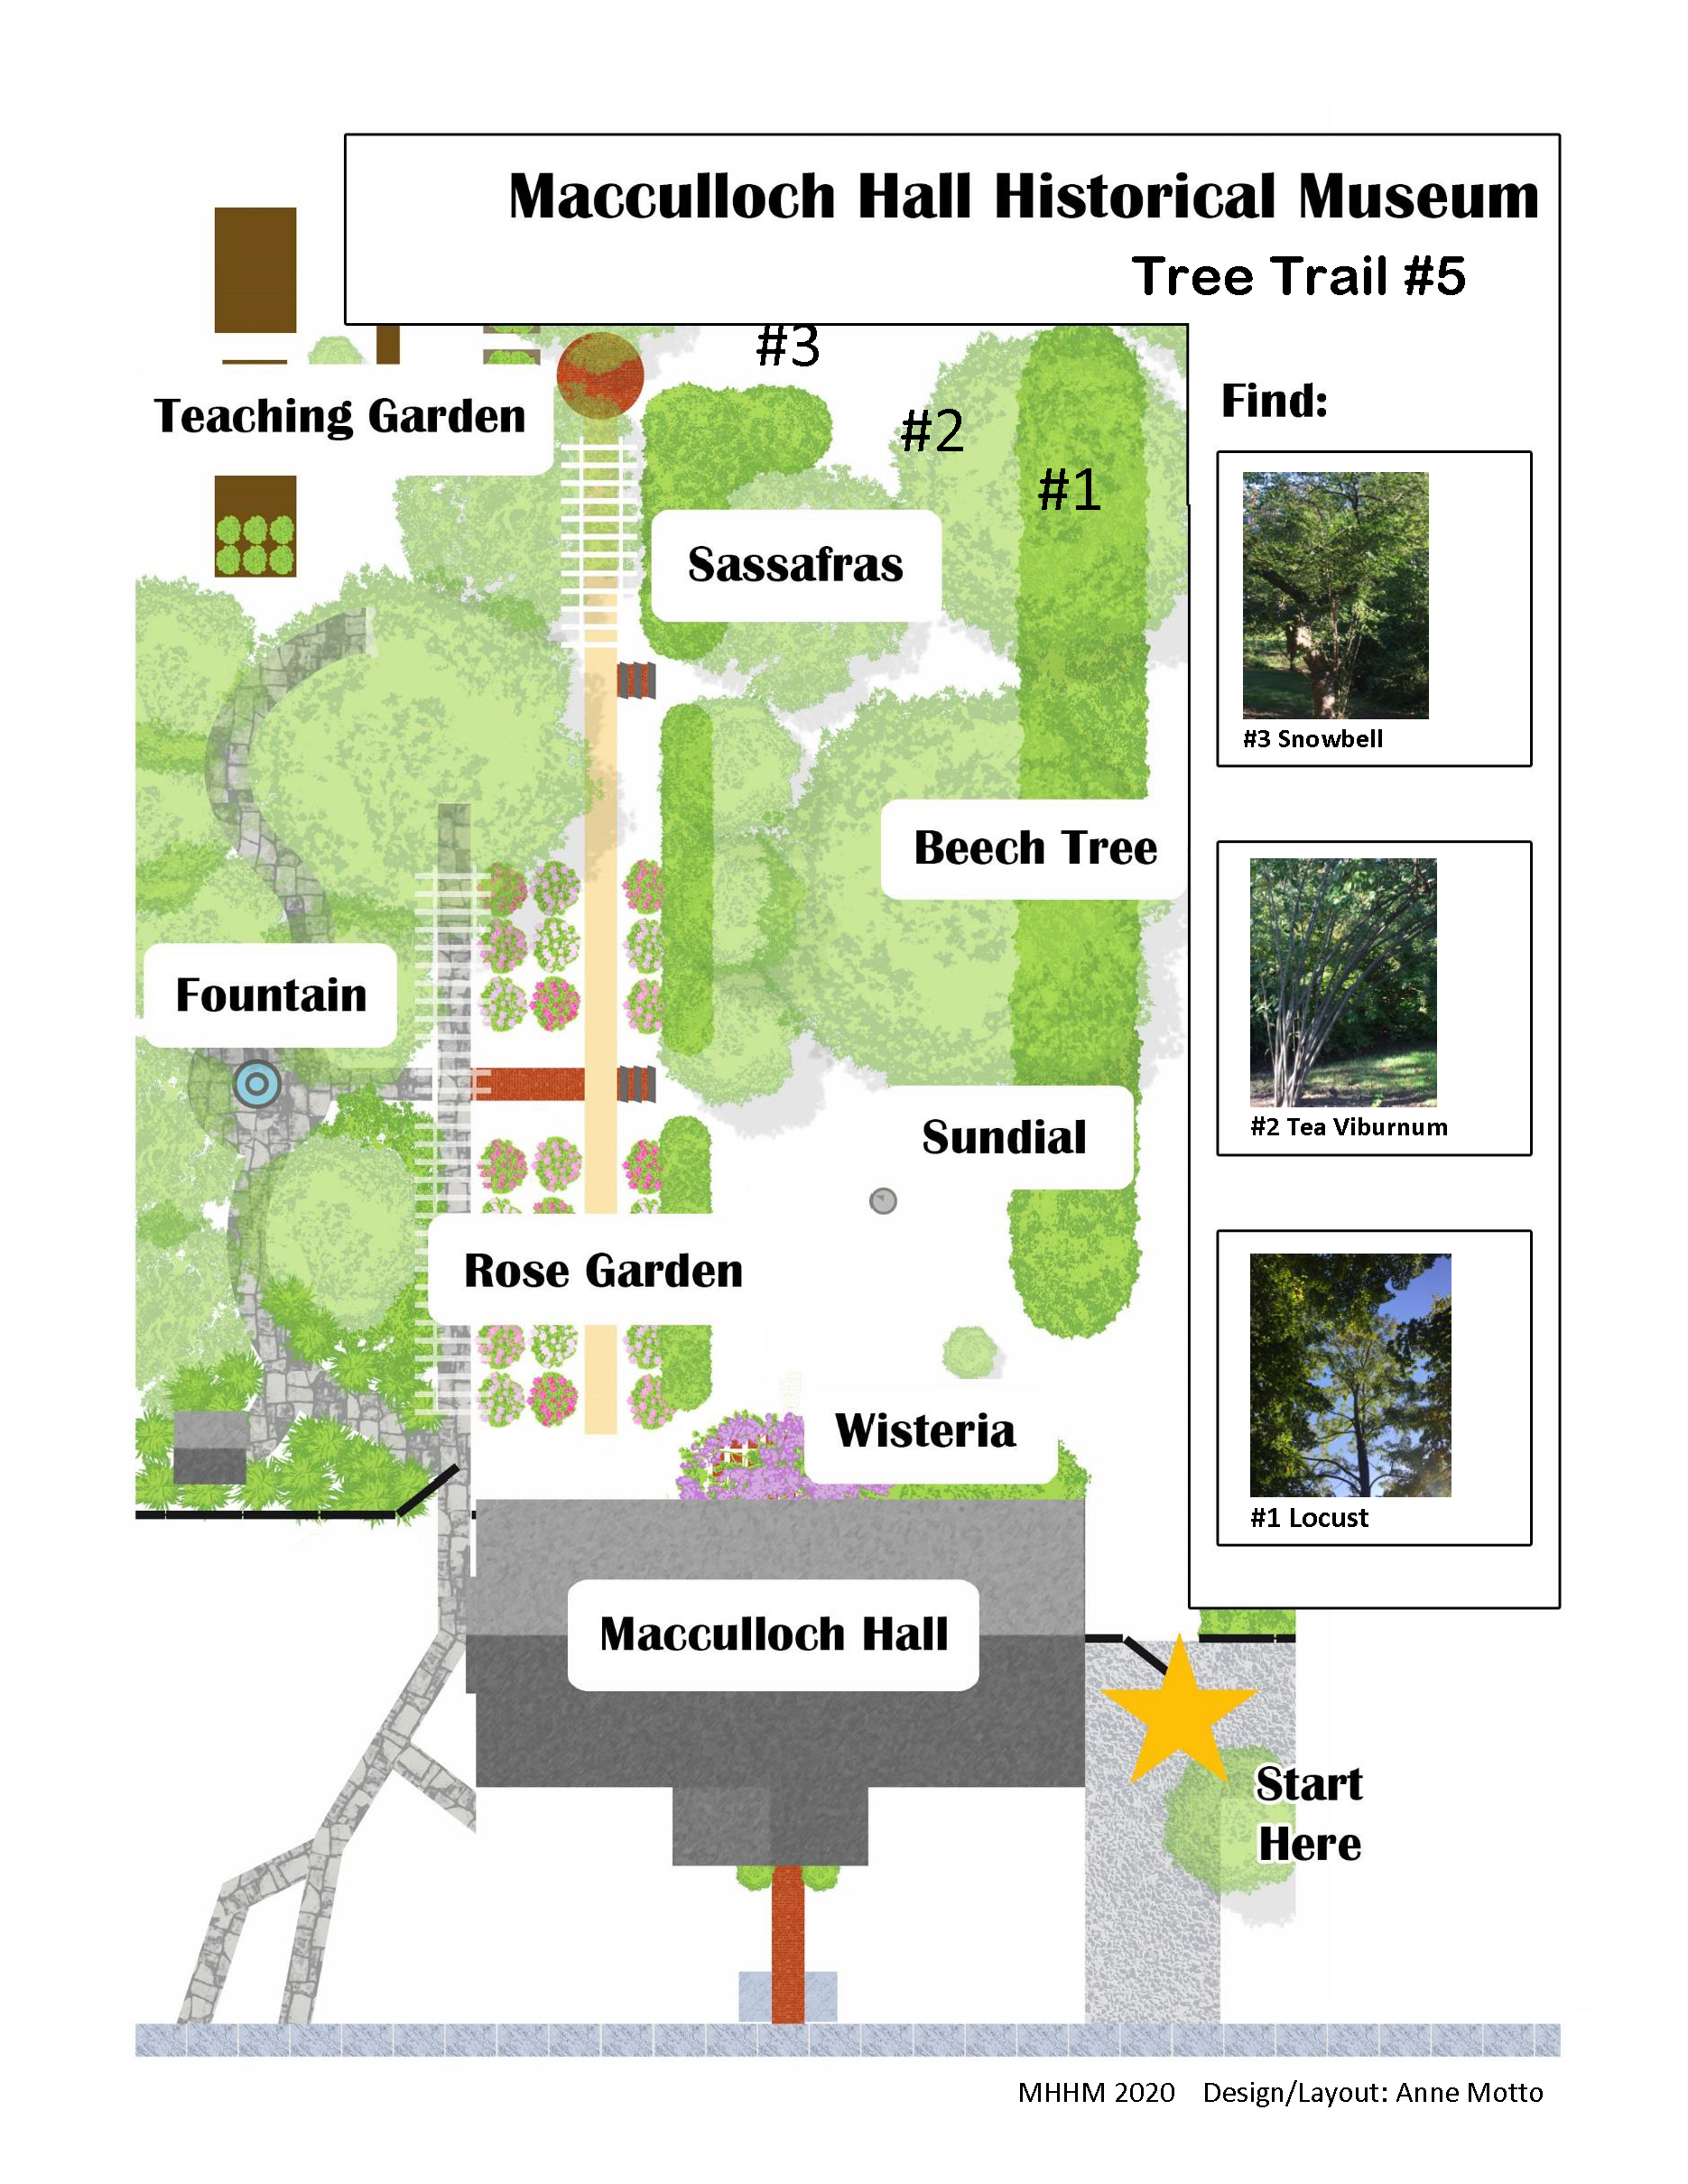 Un mapa gráfico de los jardines de Macculloch Hall con una actividad para encontrar árboles.